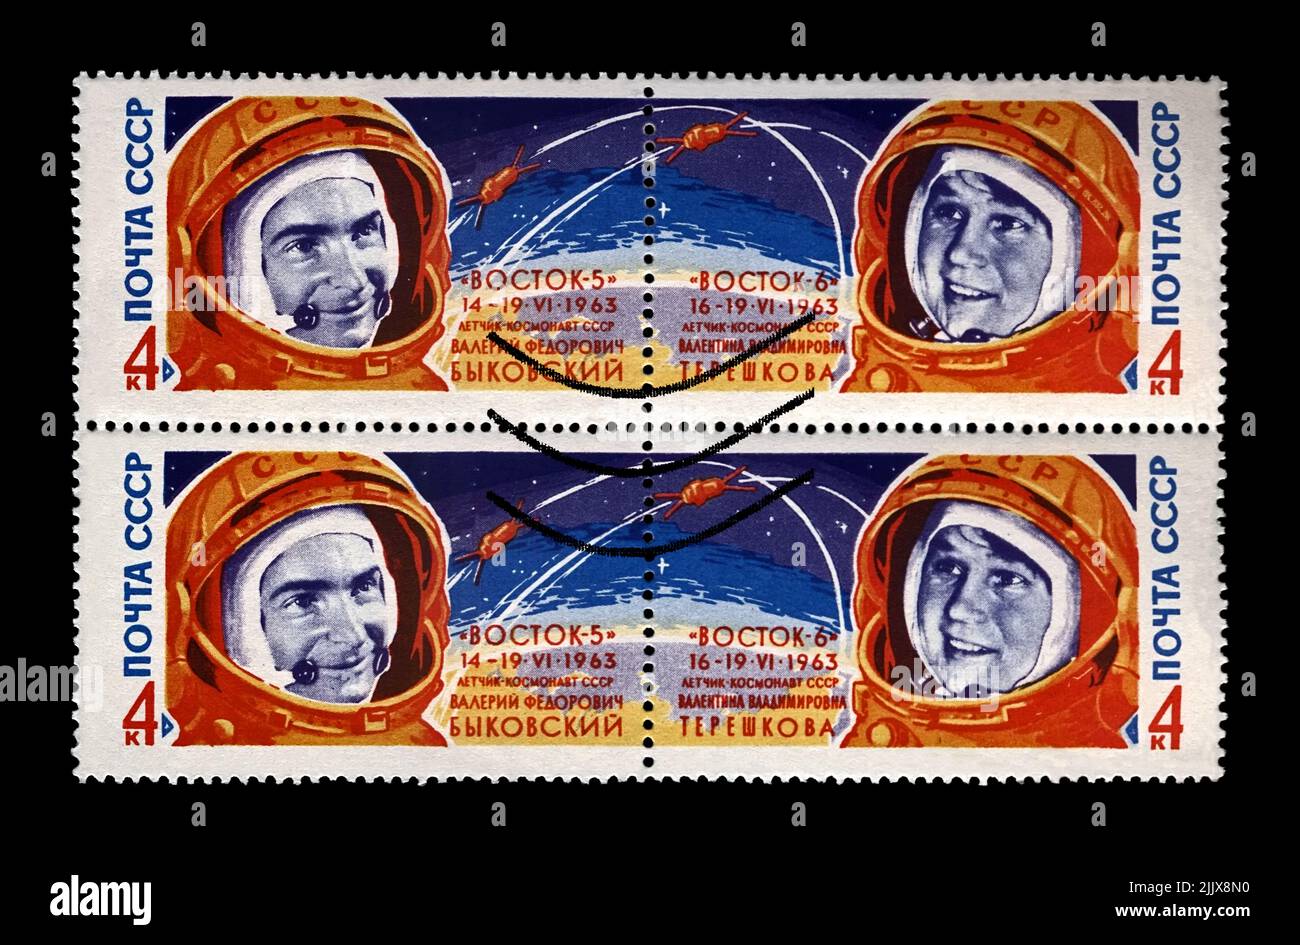 Valentina Tereshkova y Valery Bykovsky, astronautas soviéticos, lanzadera de cohetes Vostok 5 y 6, hacia 1963. Sello postal cancelado impreso en la URSS Foto de stock